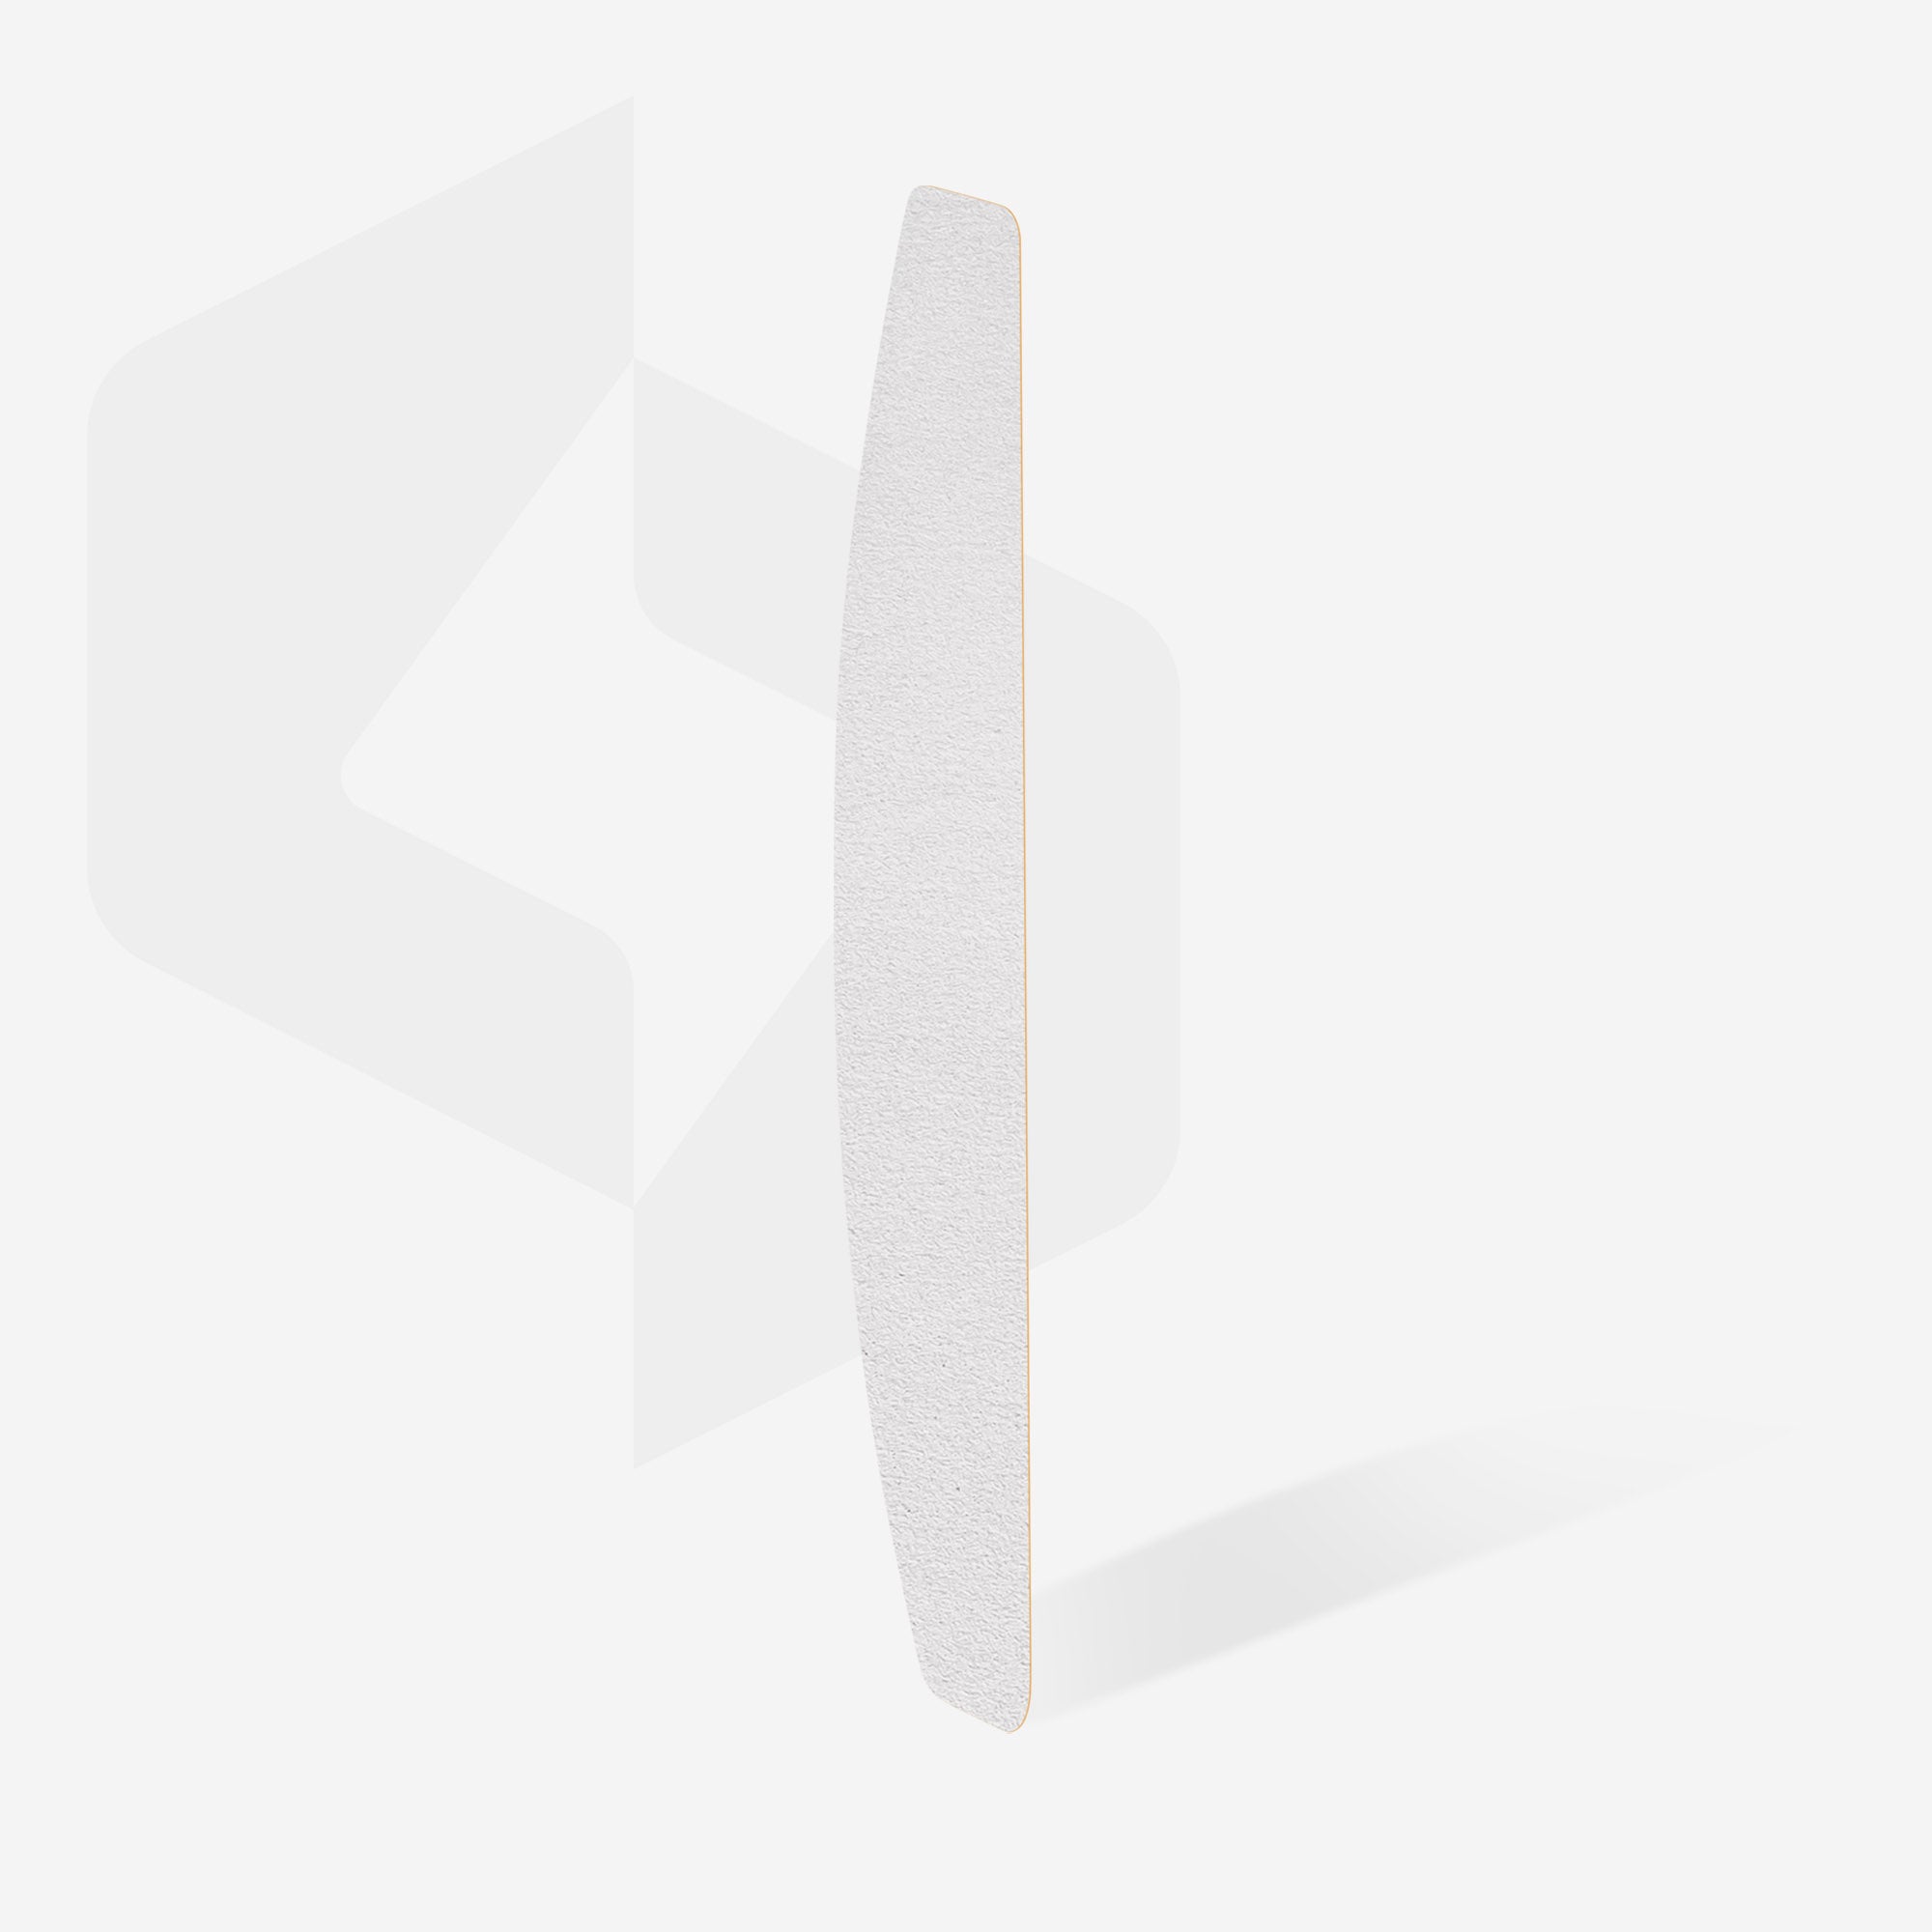 Archivos desechables blancos para lima de uñas en forma de media luna EXPERT 42 (50 piezas)